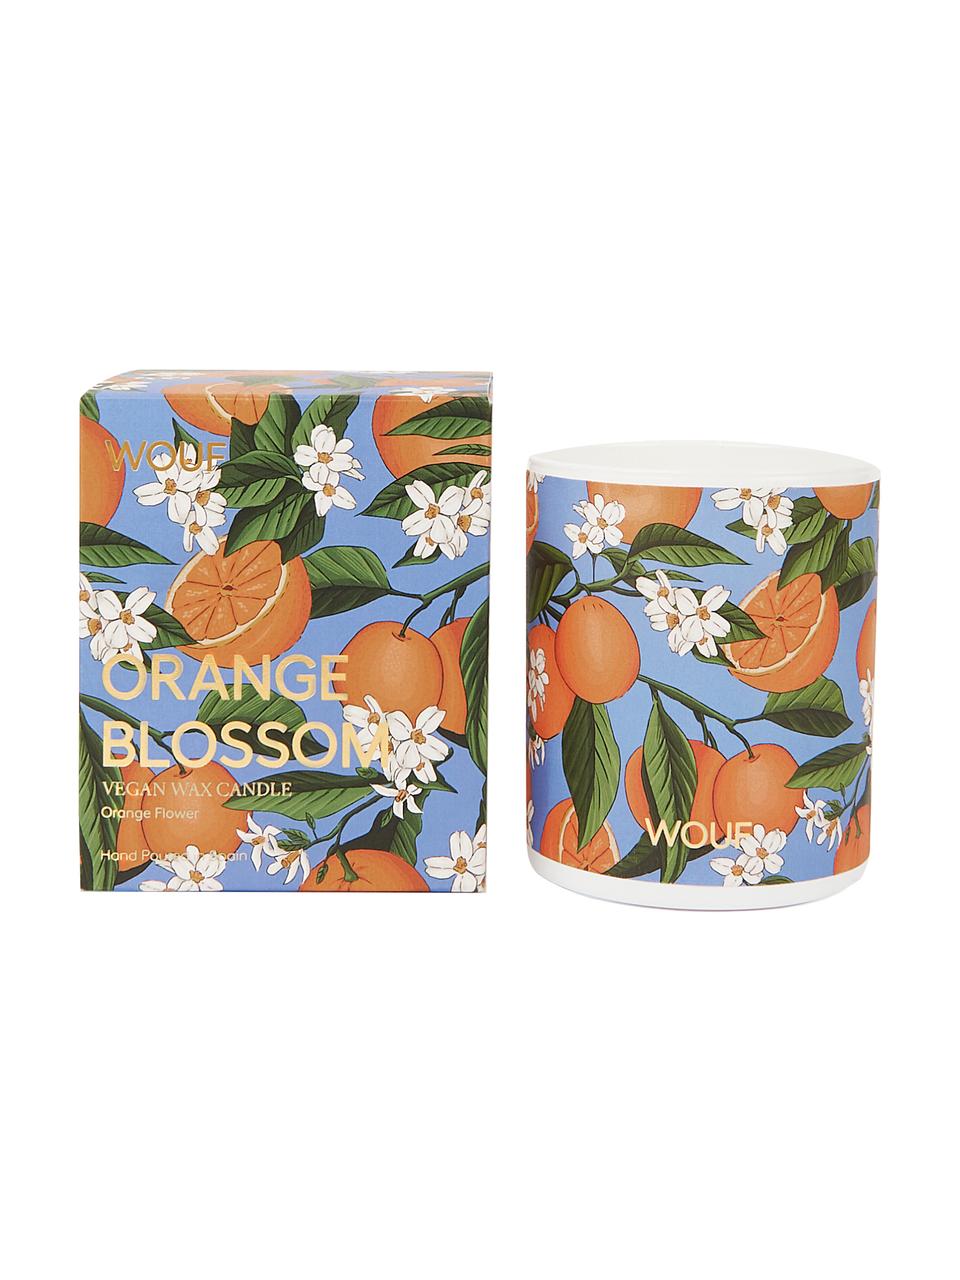 Candela profumata arancione Blossom (fior d'arancio), 100% cera vegetale, Arancione, blu, Ø 8 x Alt. 10 cm